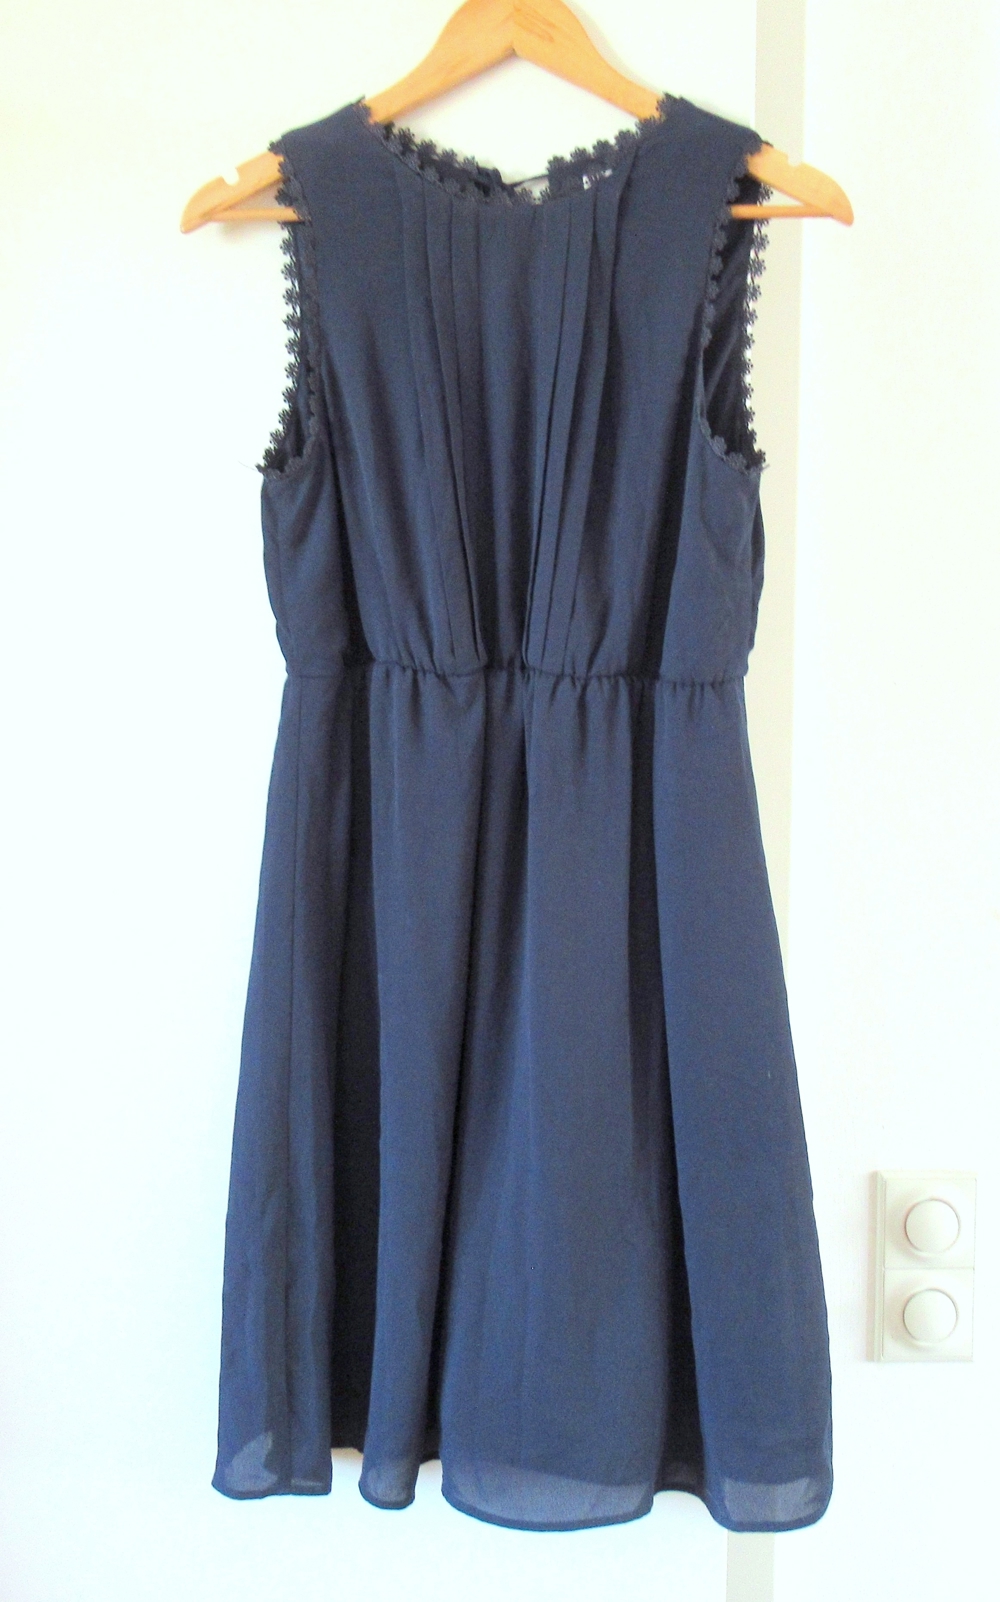 Neuwertiges dunkelblaues Kleid Größe S mit Borde an Ausschnitten